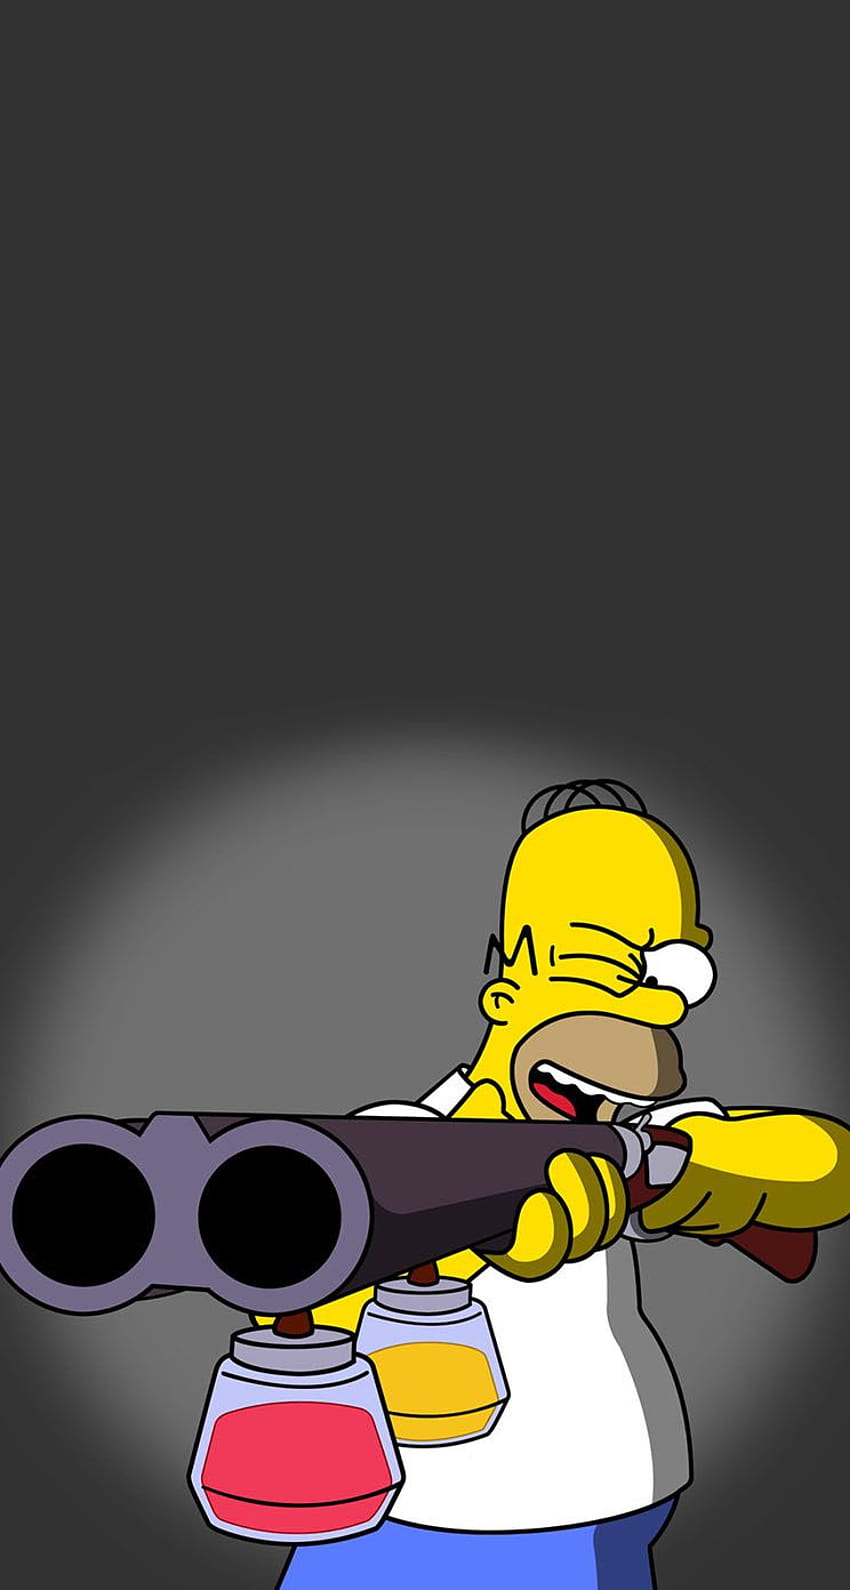 Homer Simpson thật sự là một nhân vật phổ biến và thú vị. Nếu bạn là một fan của chương trình hoạt hình \